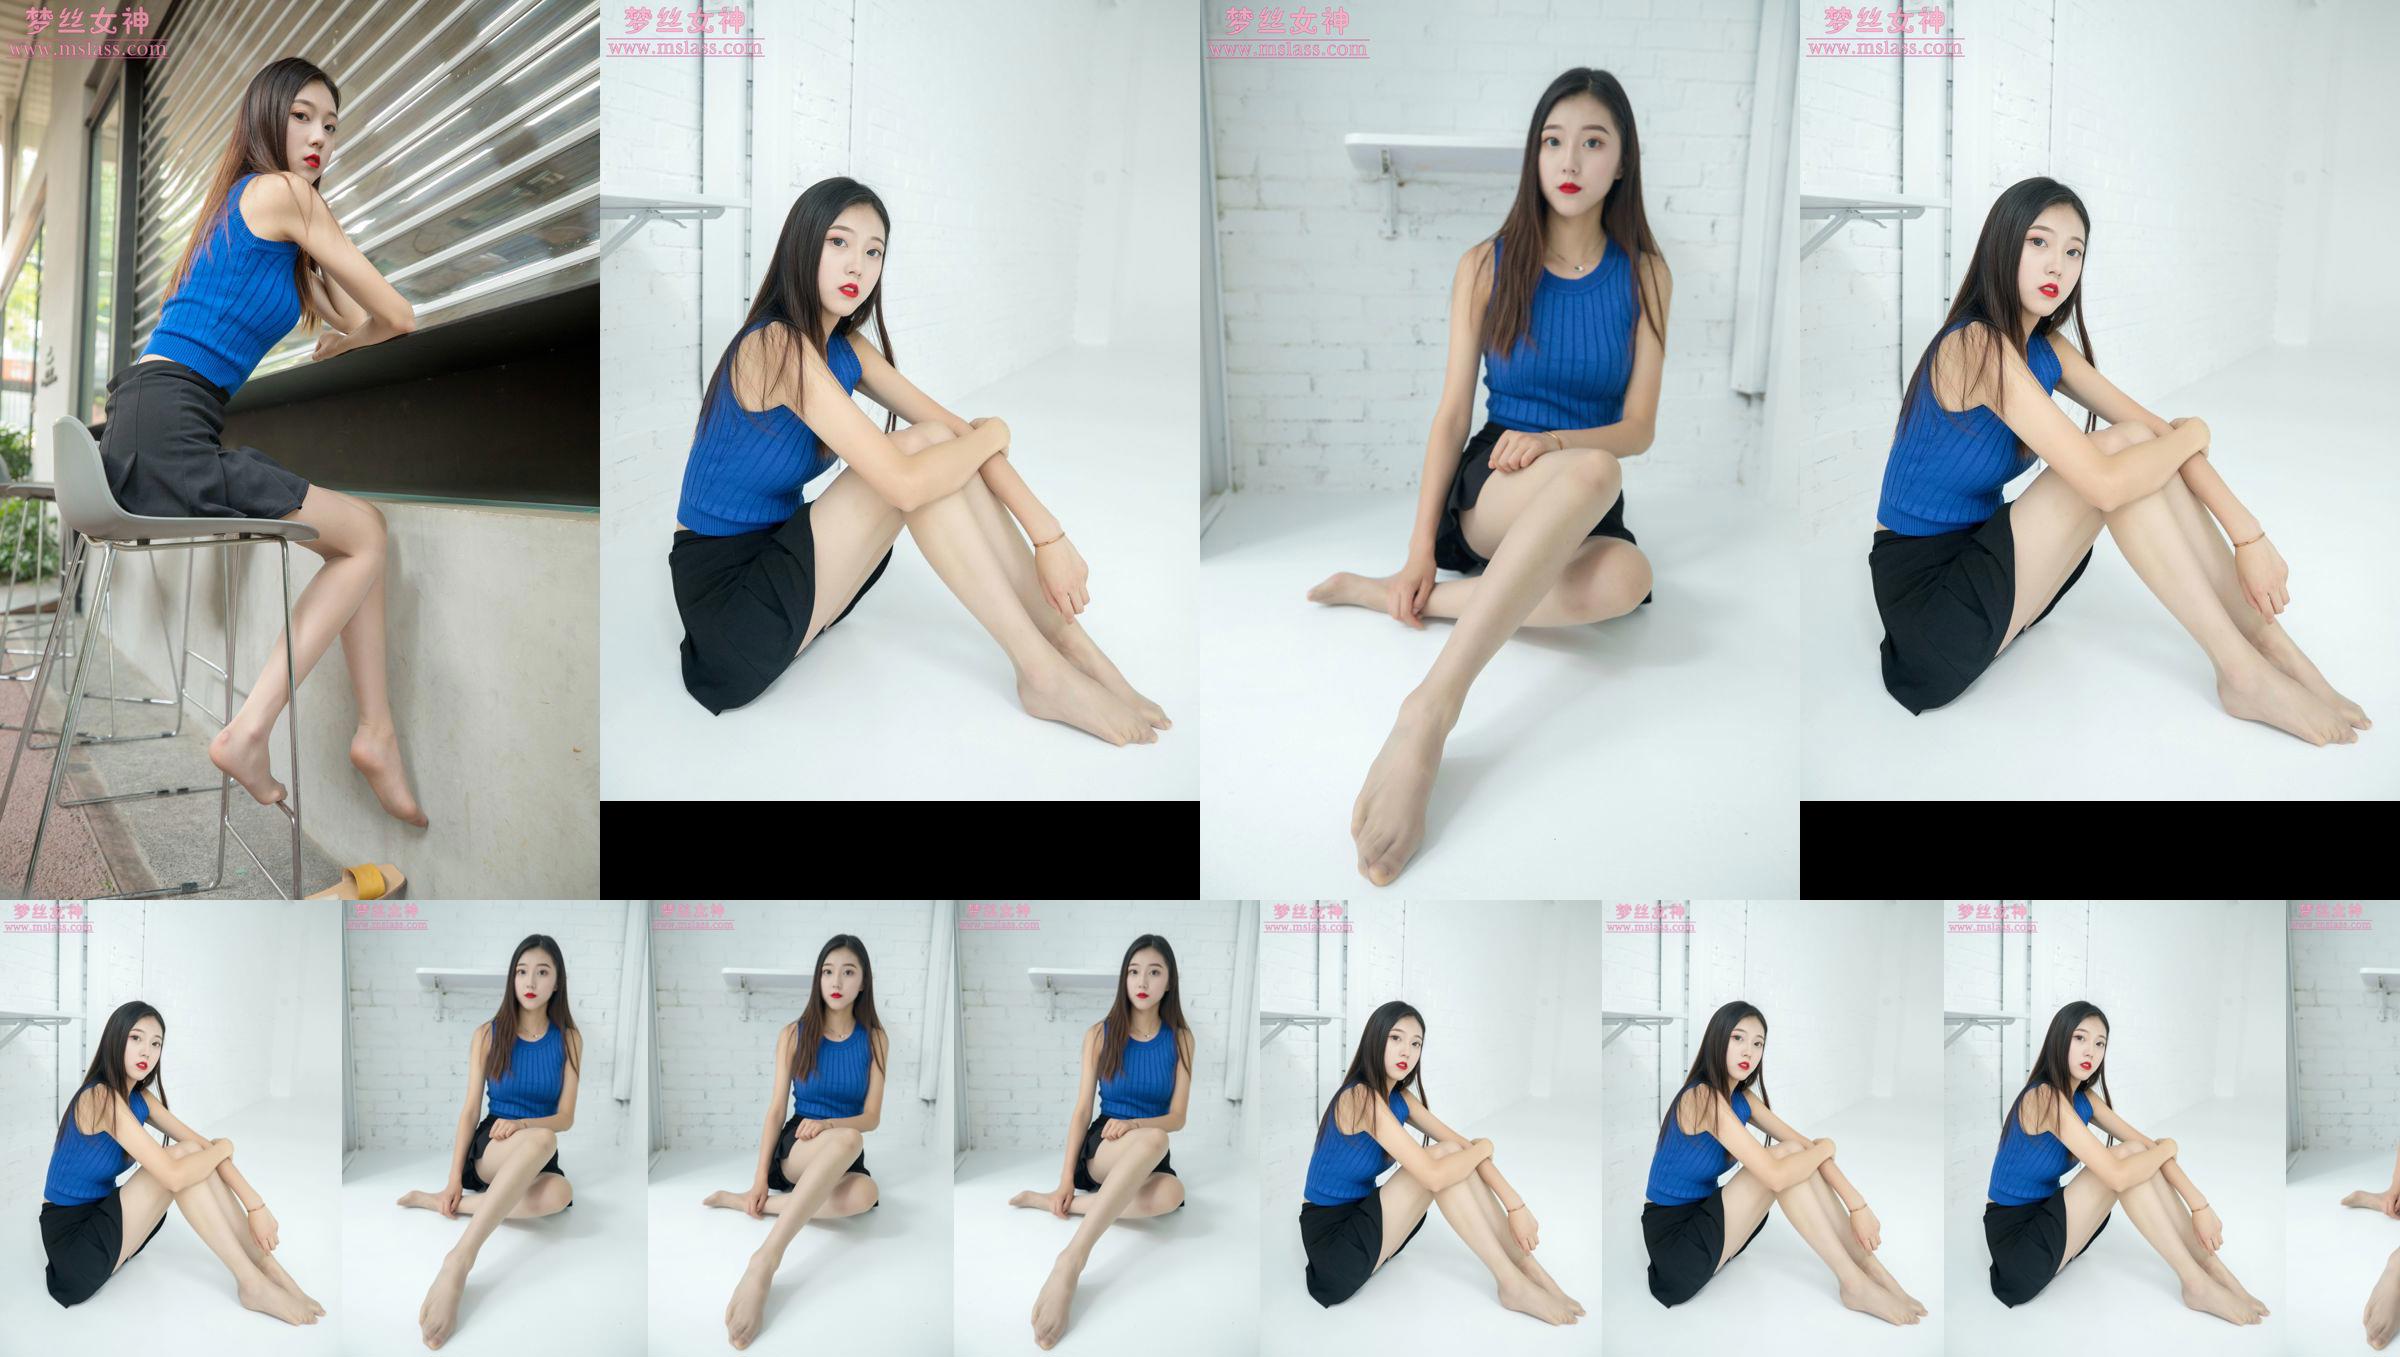 [MSLASS] Shu Lei Art Space Stockings Beautiful Legs No.d57932 Trang 1